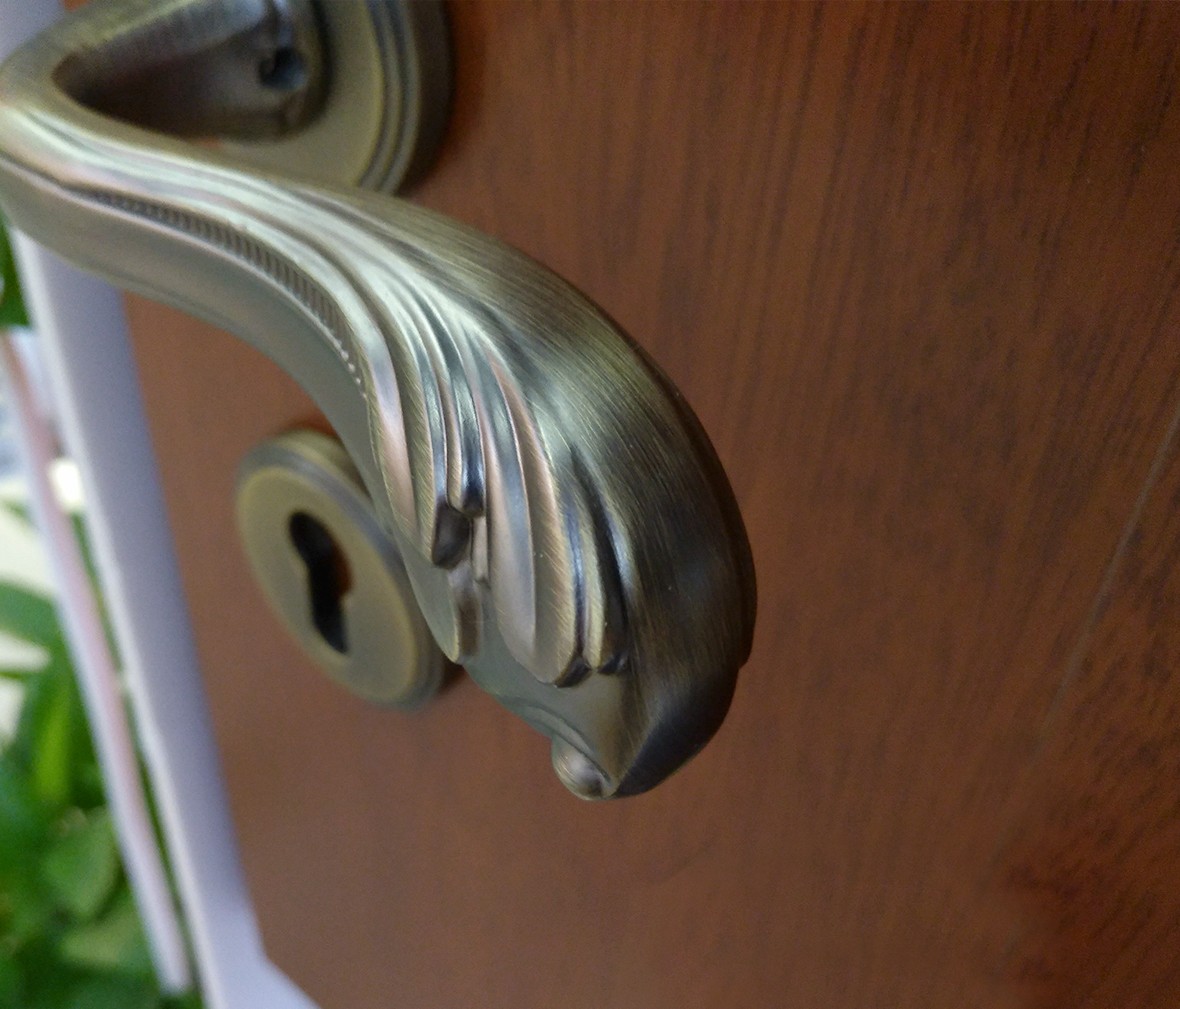 晾霸五金 米开朗705-555MAB型号门锁 锌合金材质 优质门锁 情景细节